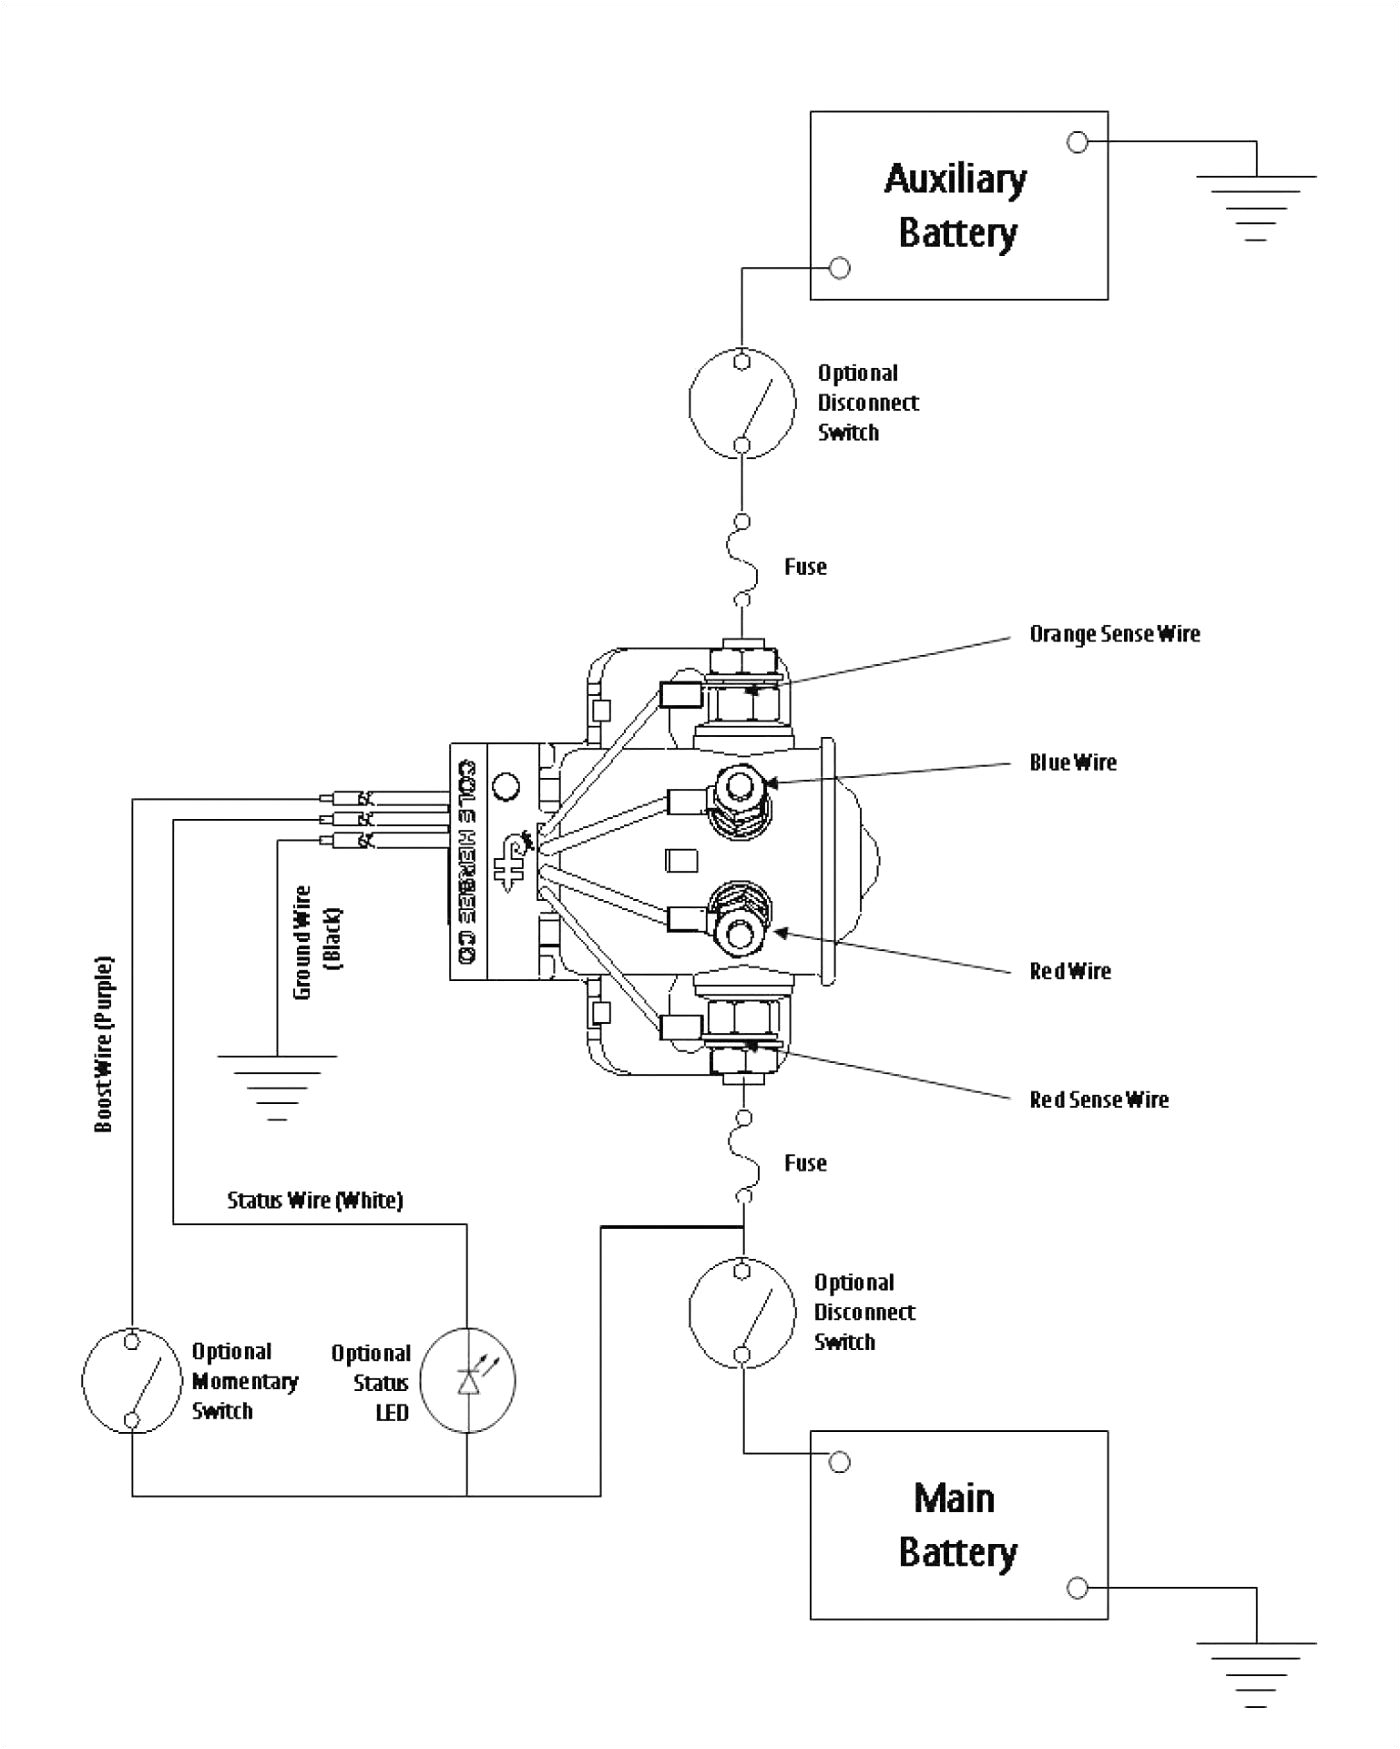 30 rv wiring diagram coleman mach thermostat wiring diagram coleman mach rv thermostat wiring diagram 1 jpg